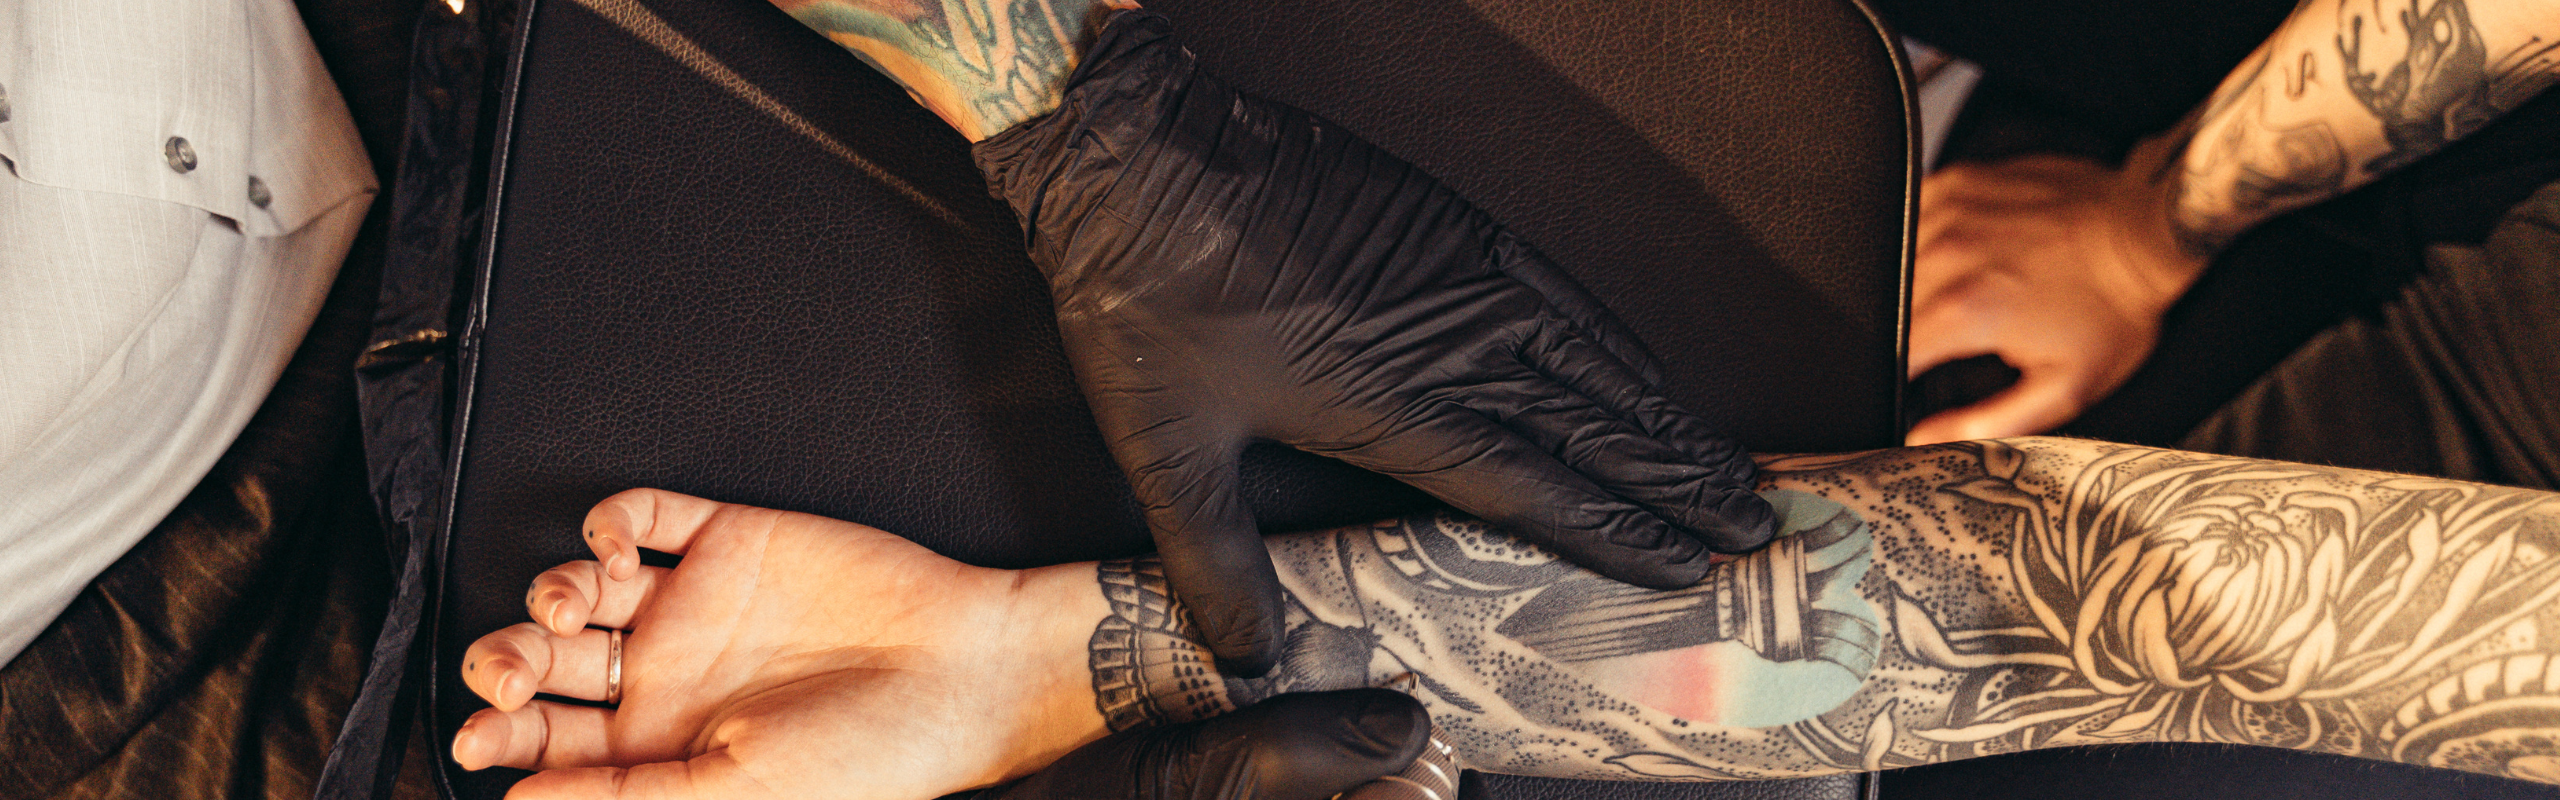 Boxing Gloves Tattoo by Jesse Rix: TattooNOW